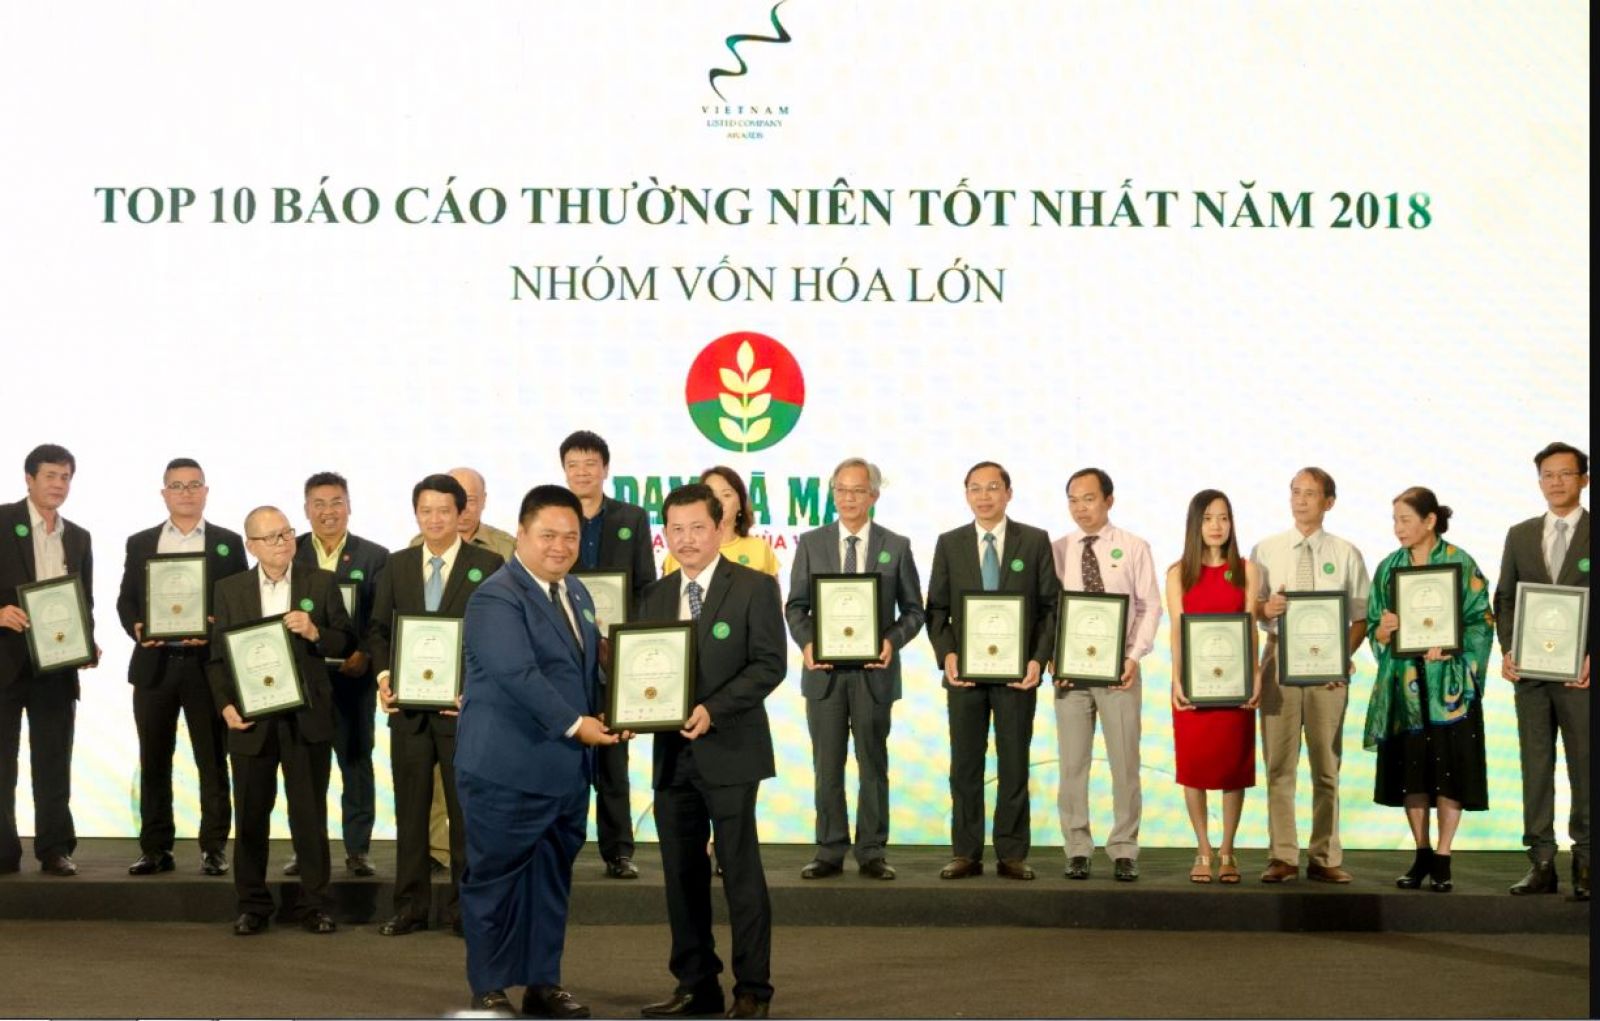 Ông Lê Ngọc Minh Trí – Phó Tổng Giám đốc đại diện công ty lên nhận giải Top 10 báo cáo thường niên tốt nhất và Top 20 doanh nghiệp niêm yết có hệ thống quản trị công ty tốt nhất